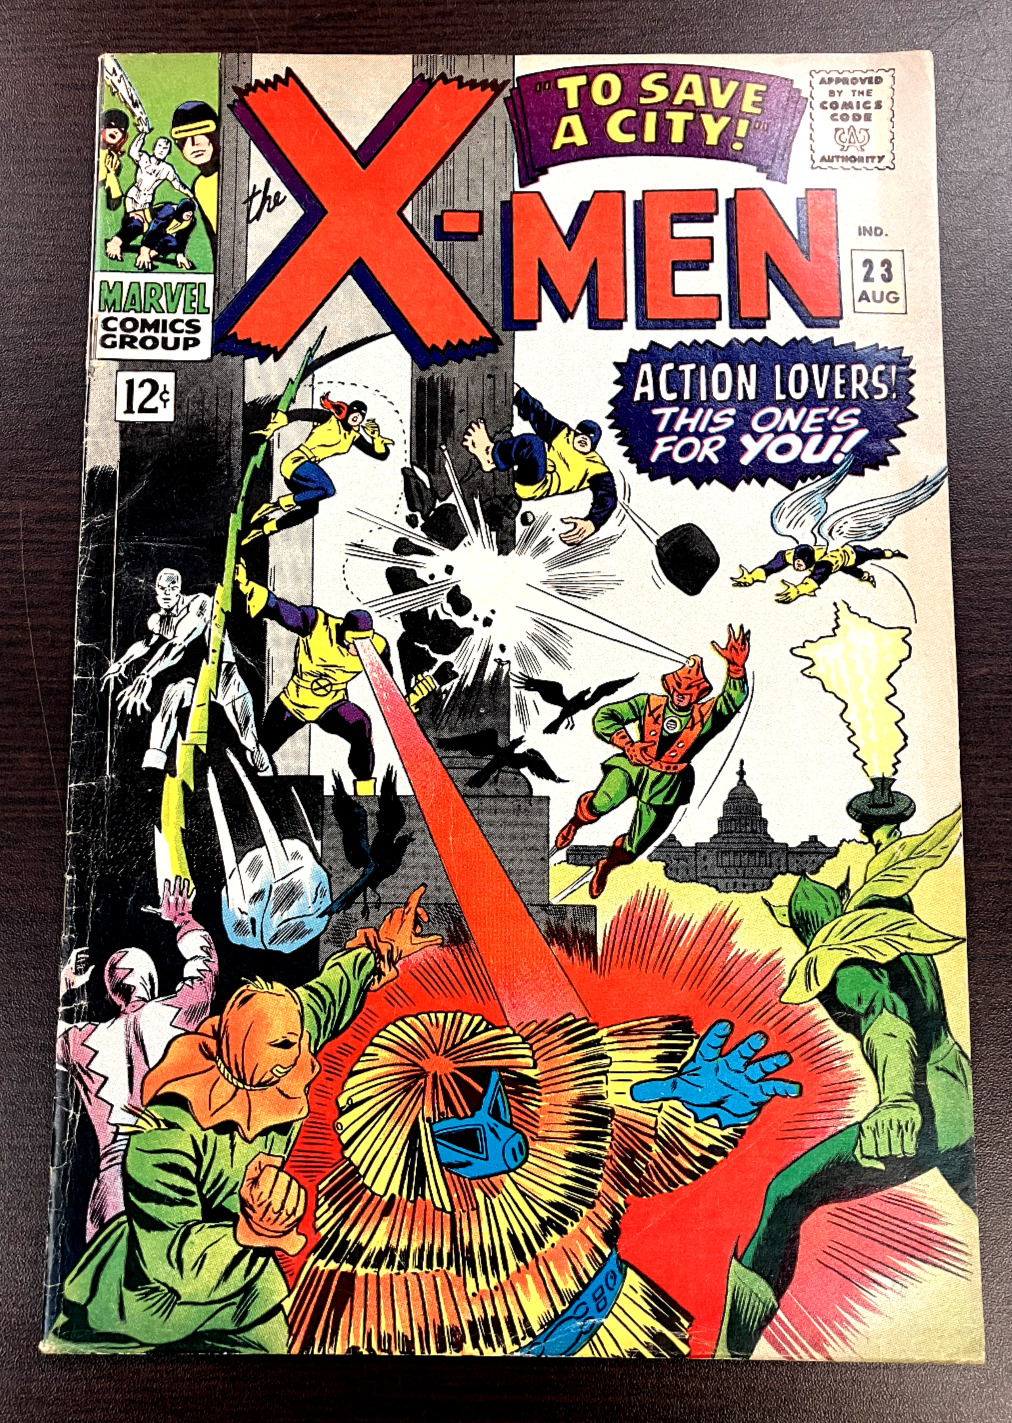 UNCANNY X-MEN #23 Marvel Comics SILVER AGE CLASSIC 1966